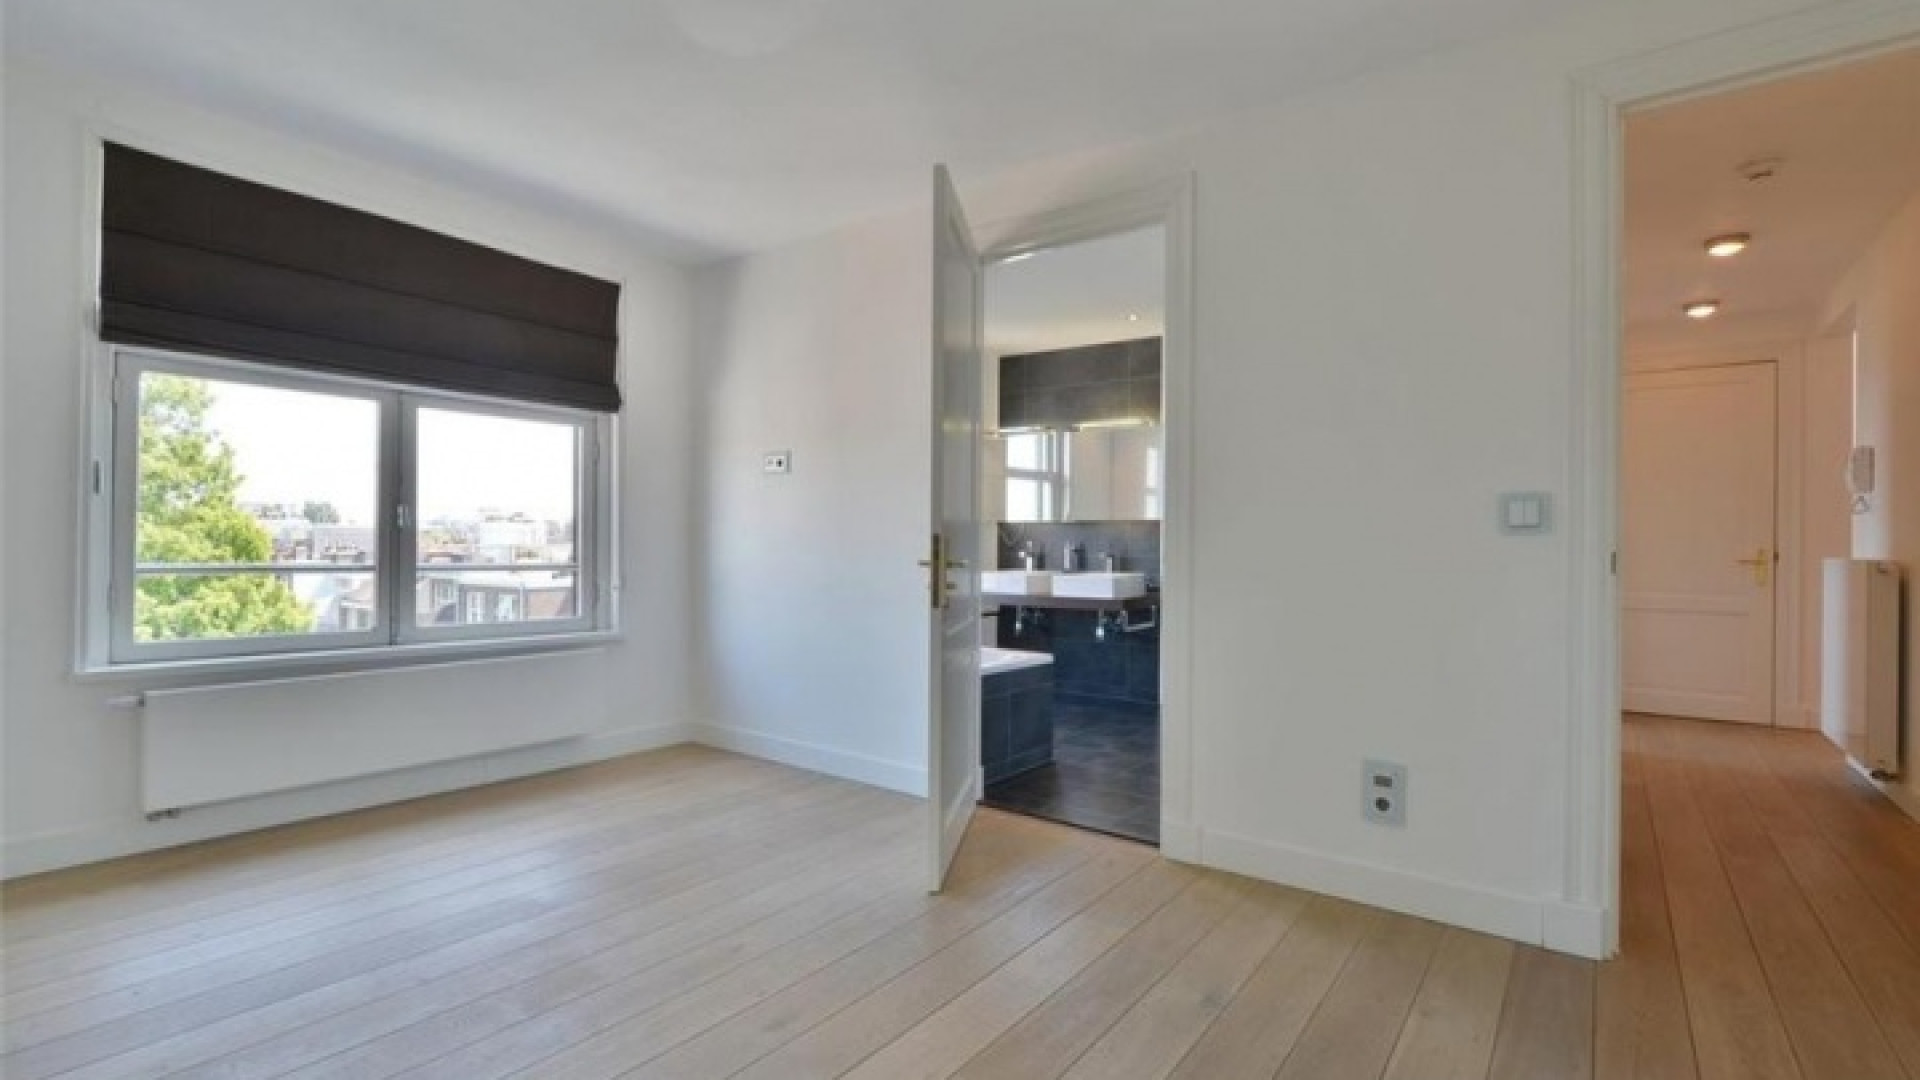 Frank Rijkaard zet zijn zeer luxe huis in Amsterdam Zuid te koop. Zie foto's 23